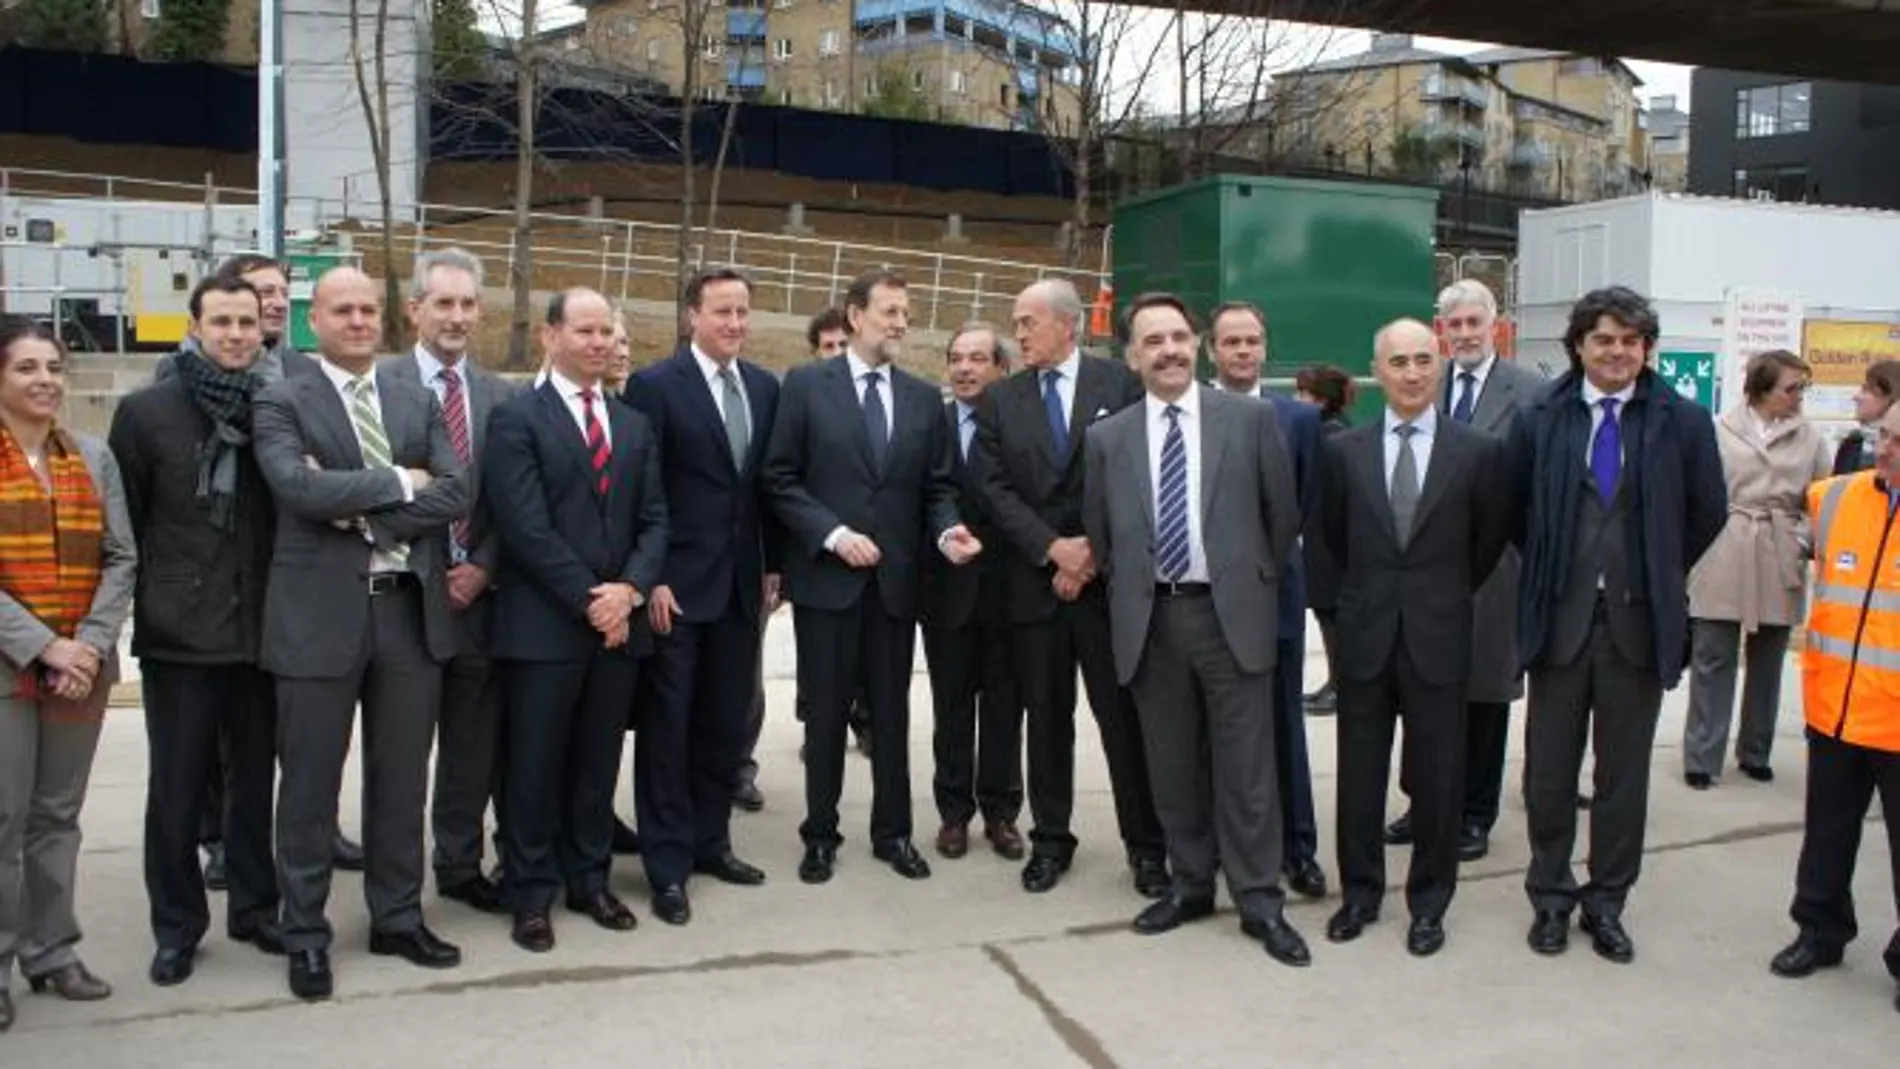 Rajoy visita con David Cameron el gran proyecto ferroviario de Londres